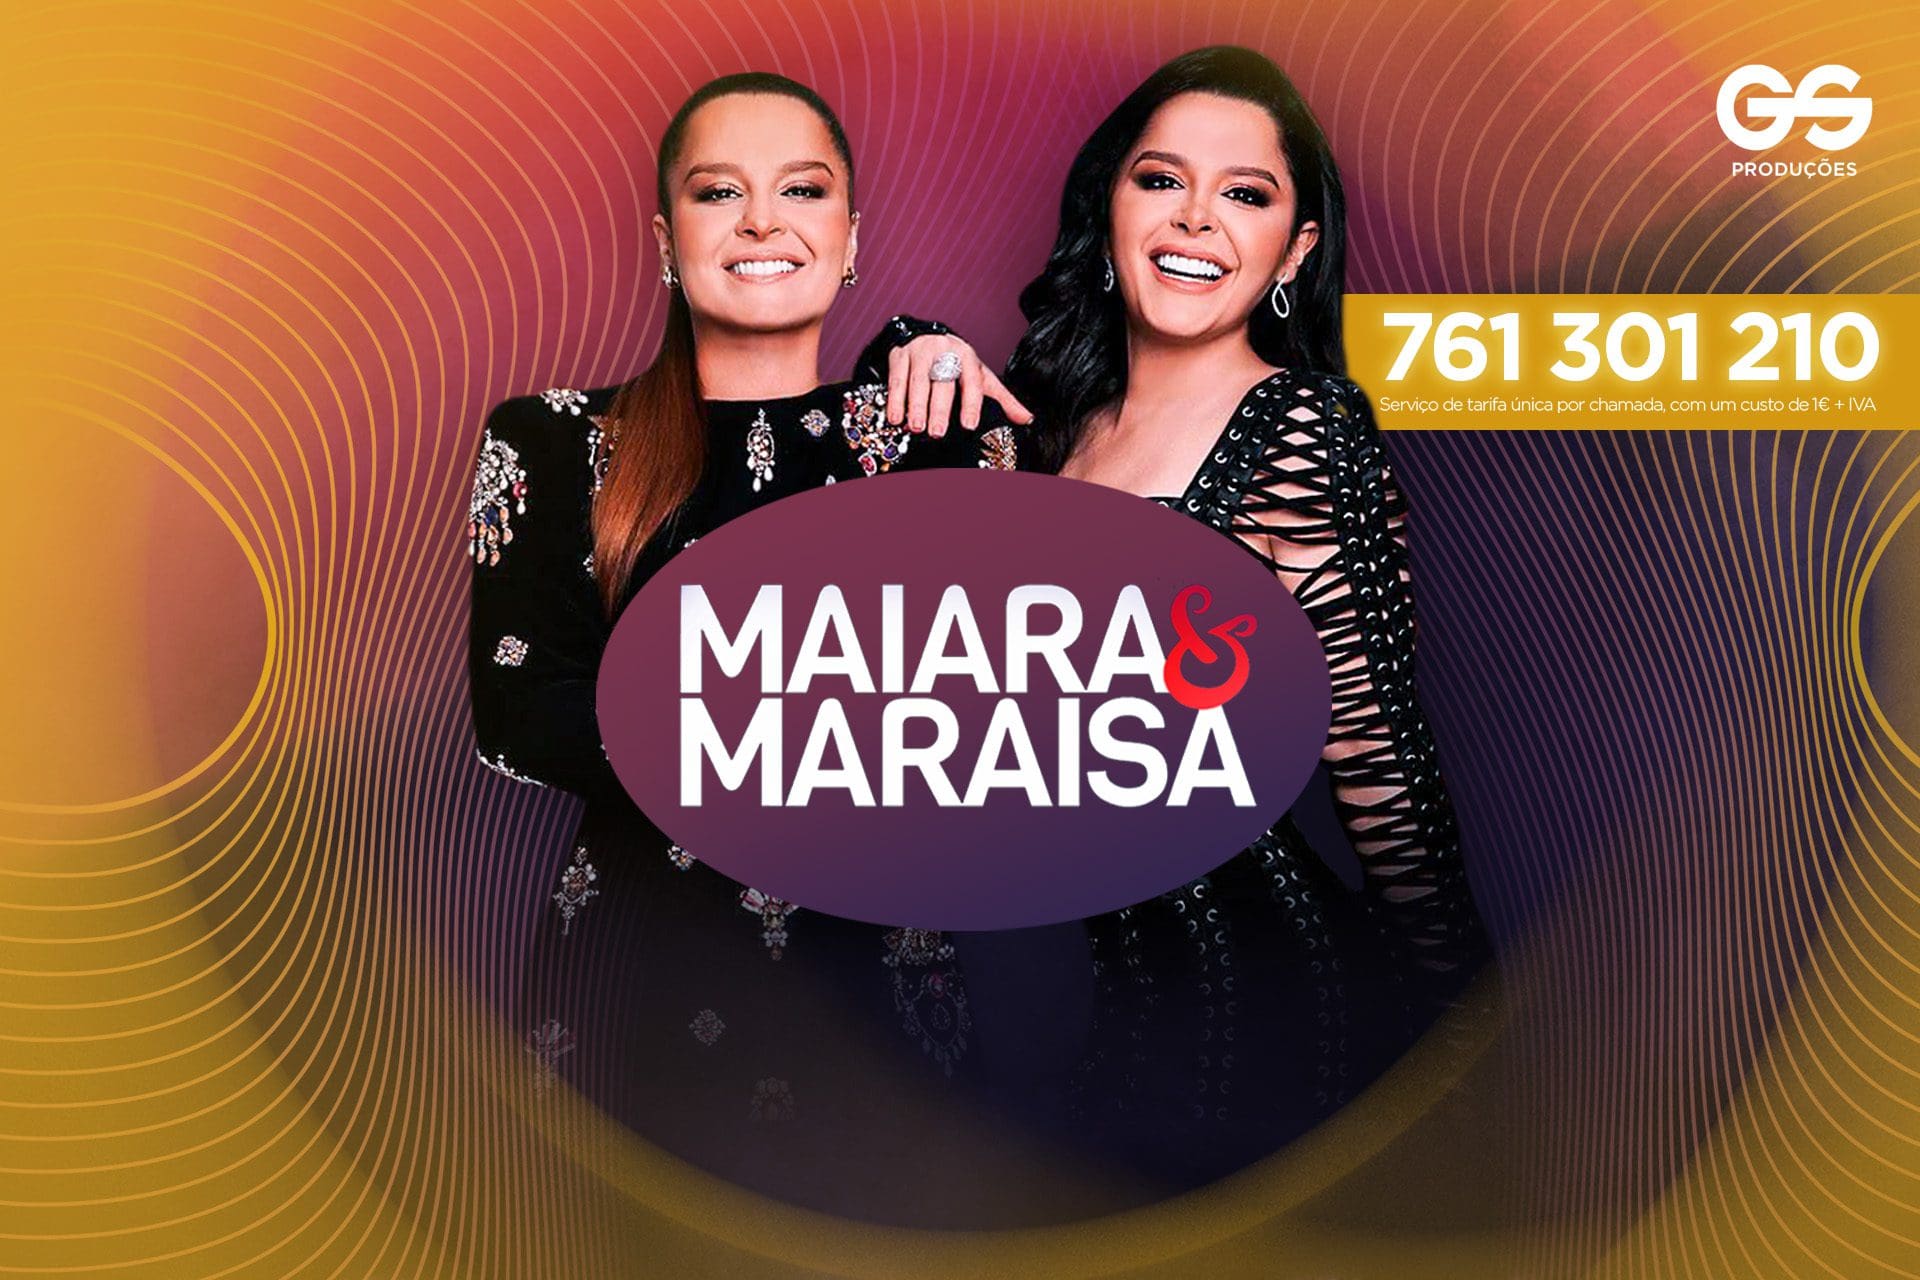 Ligue e habilite-se a ganhar bilhetes para os concertos de Maiara e Maraisa